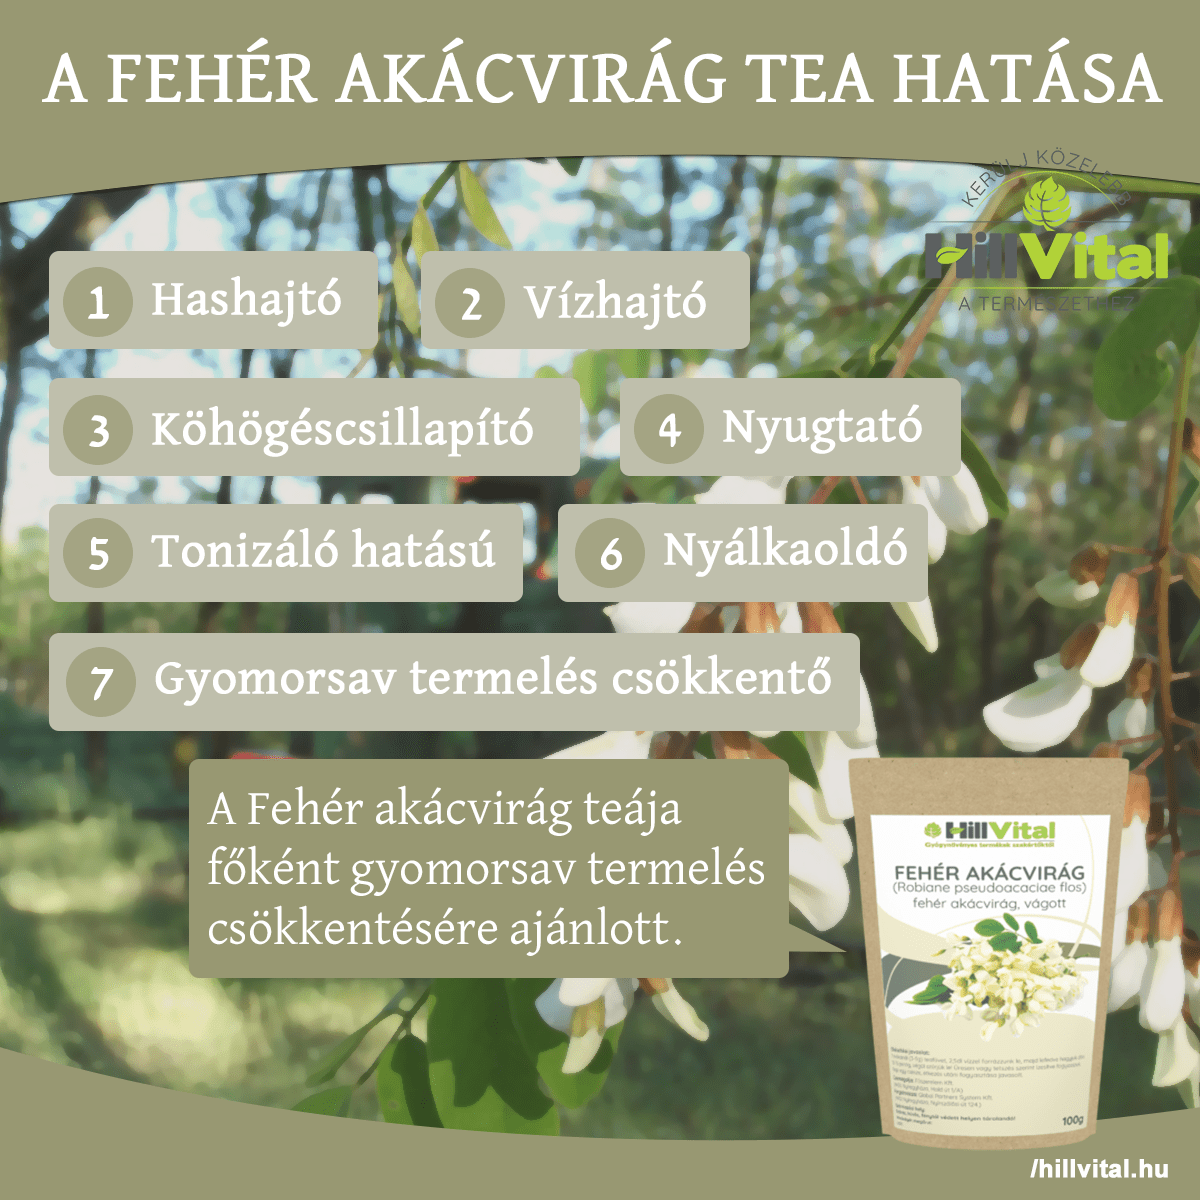 A fehér akácvirág tea képes csökkenteni a gyomorsavat.